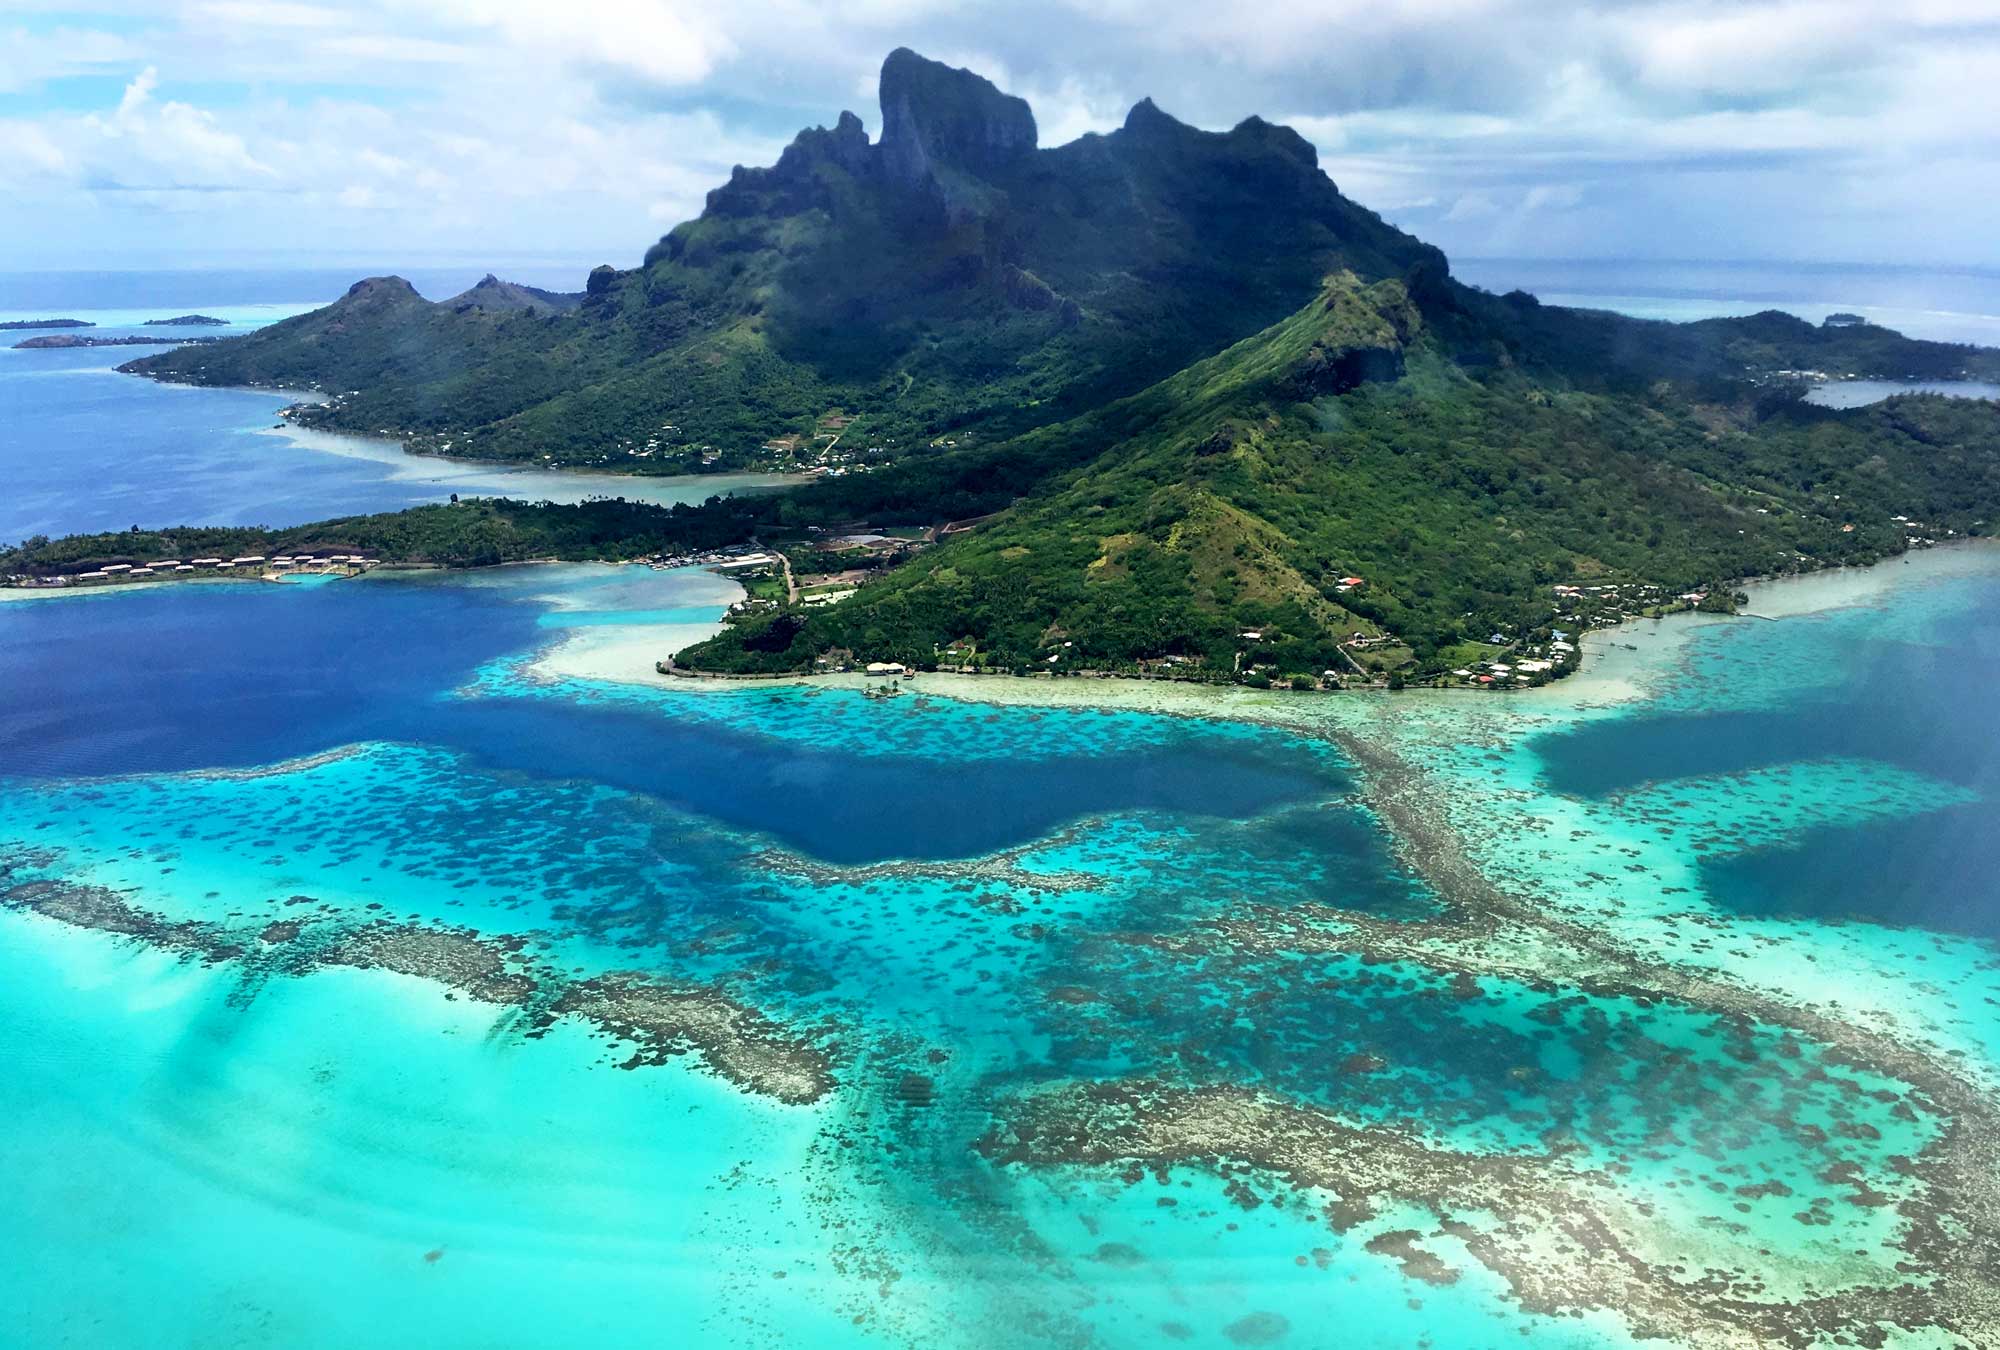 Polynesian Islands that inspired Disney's Moana: Bora Bora